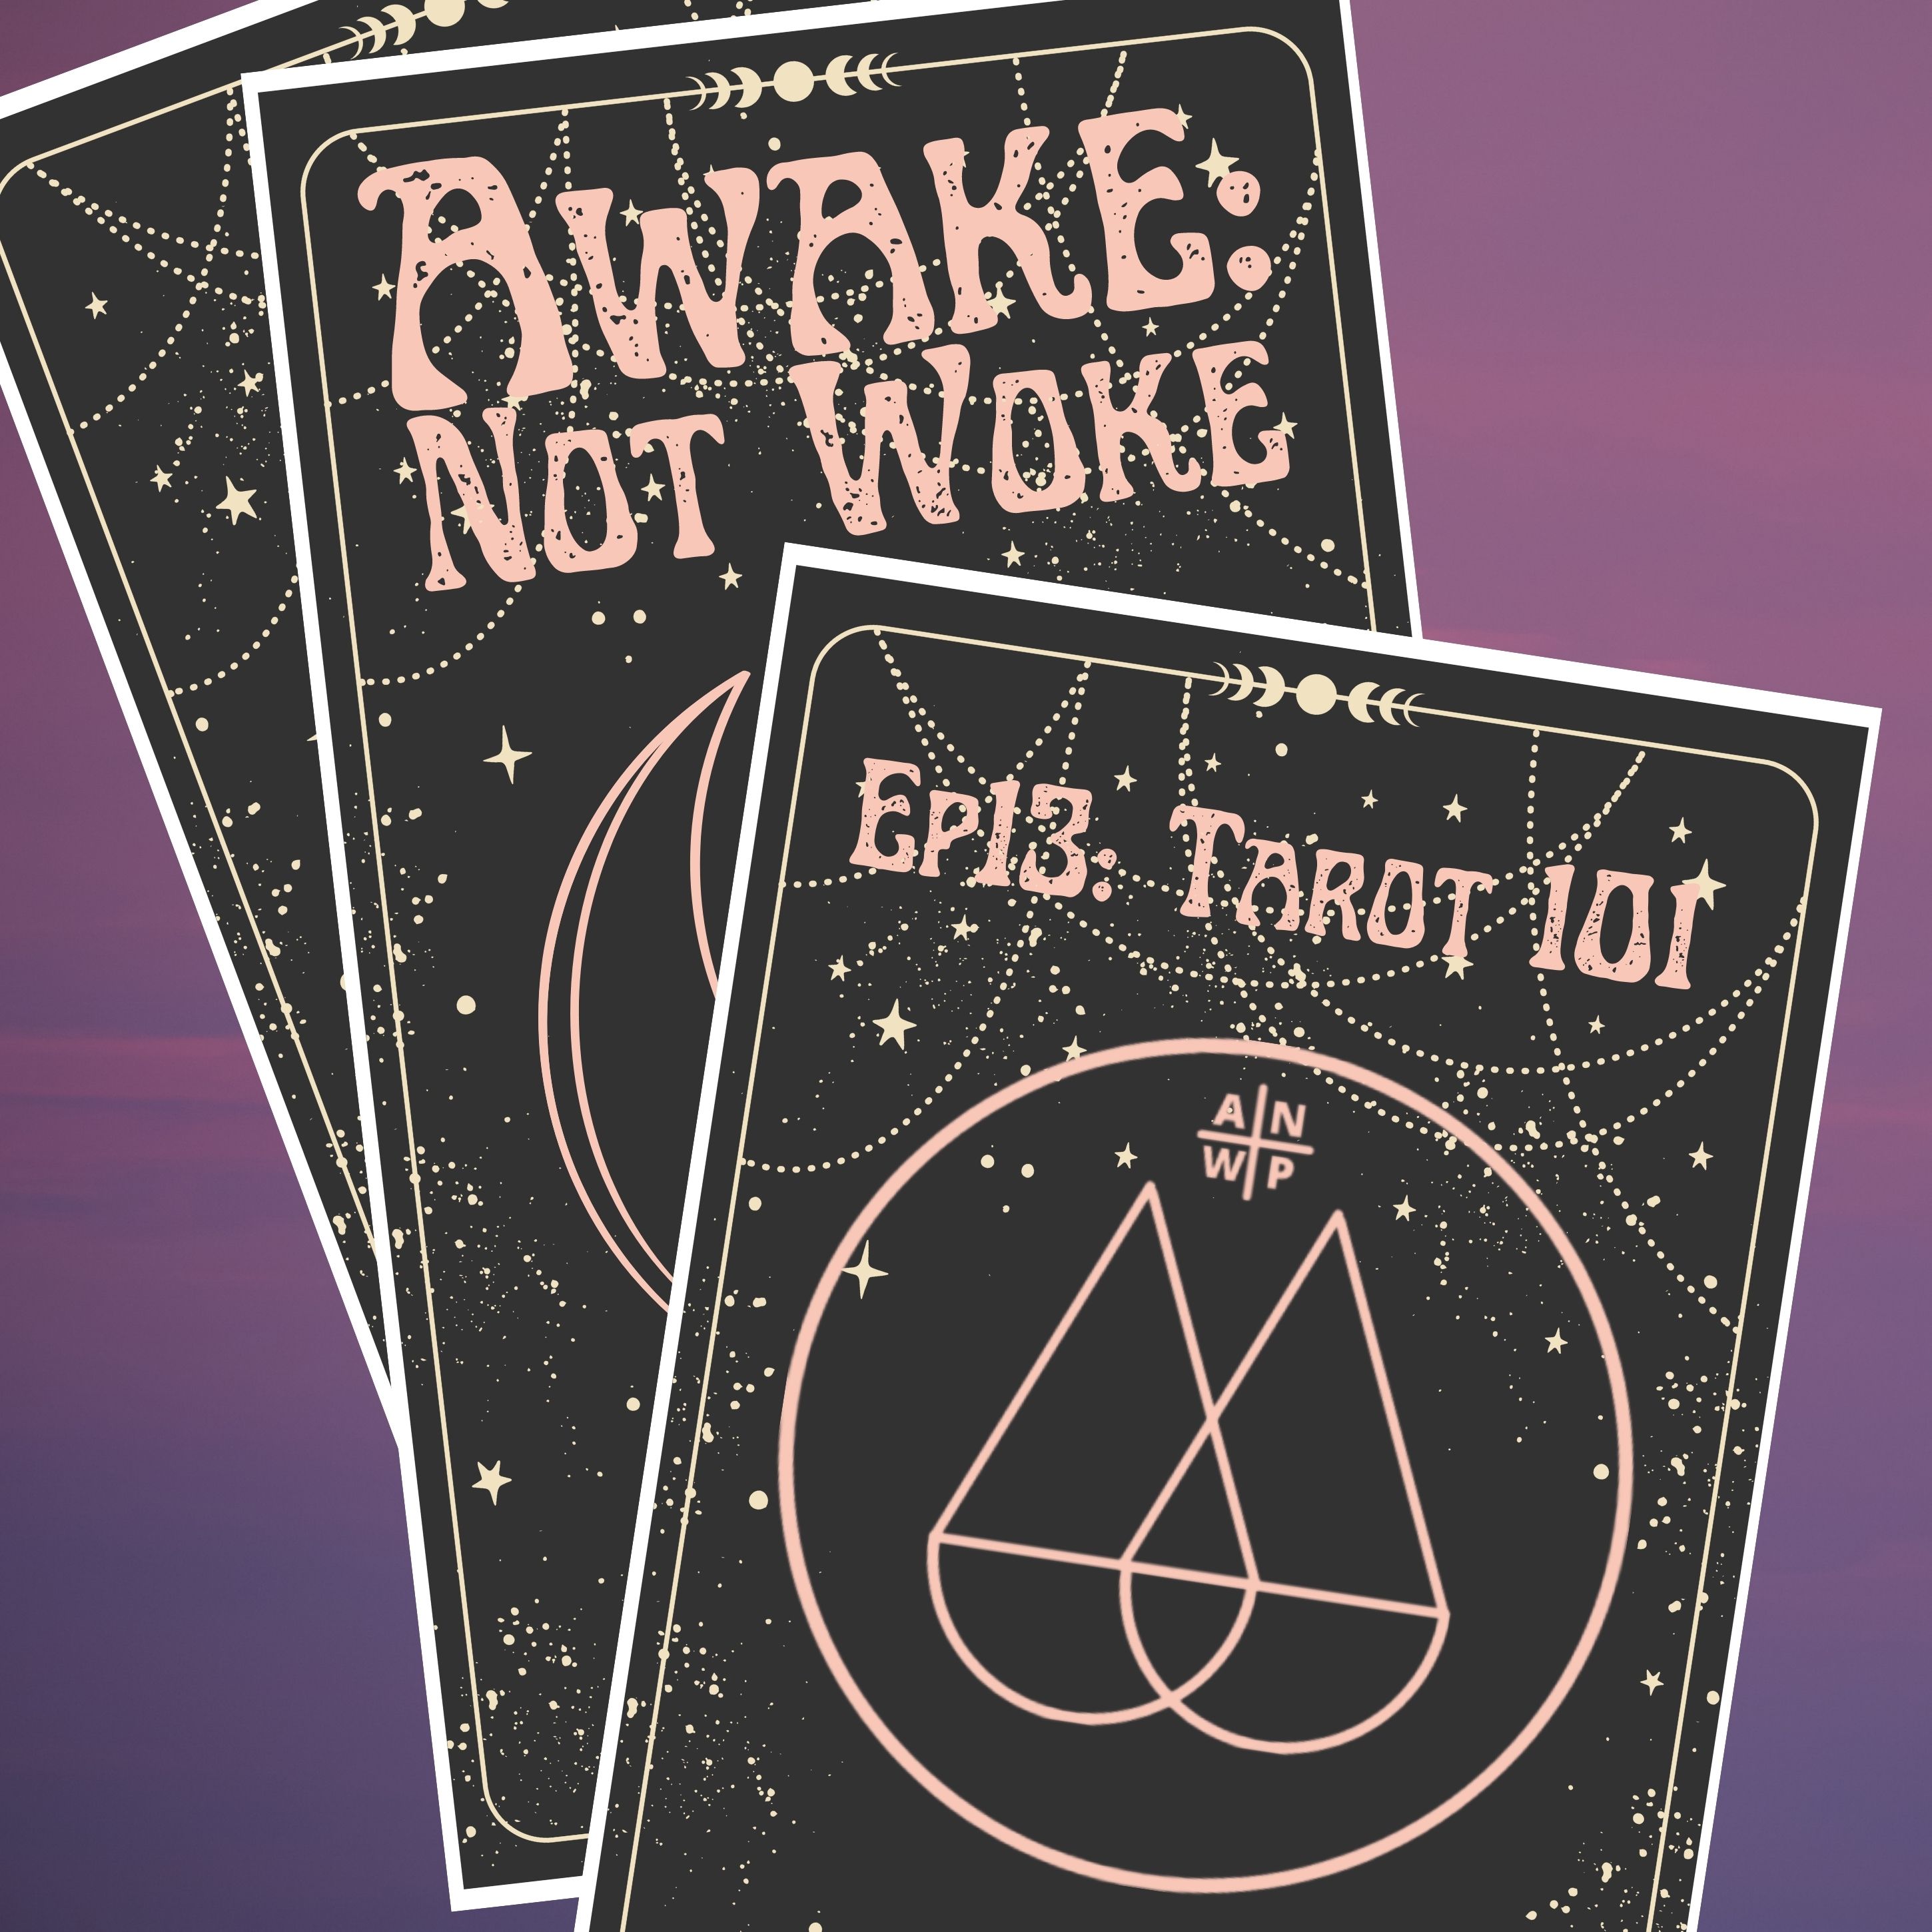 Artwork for podcast Awake: Not Woke